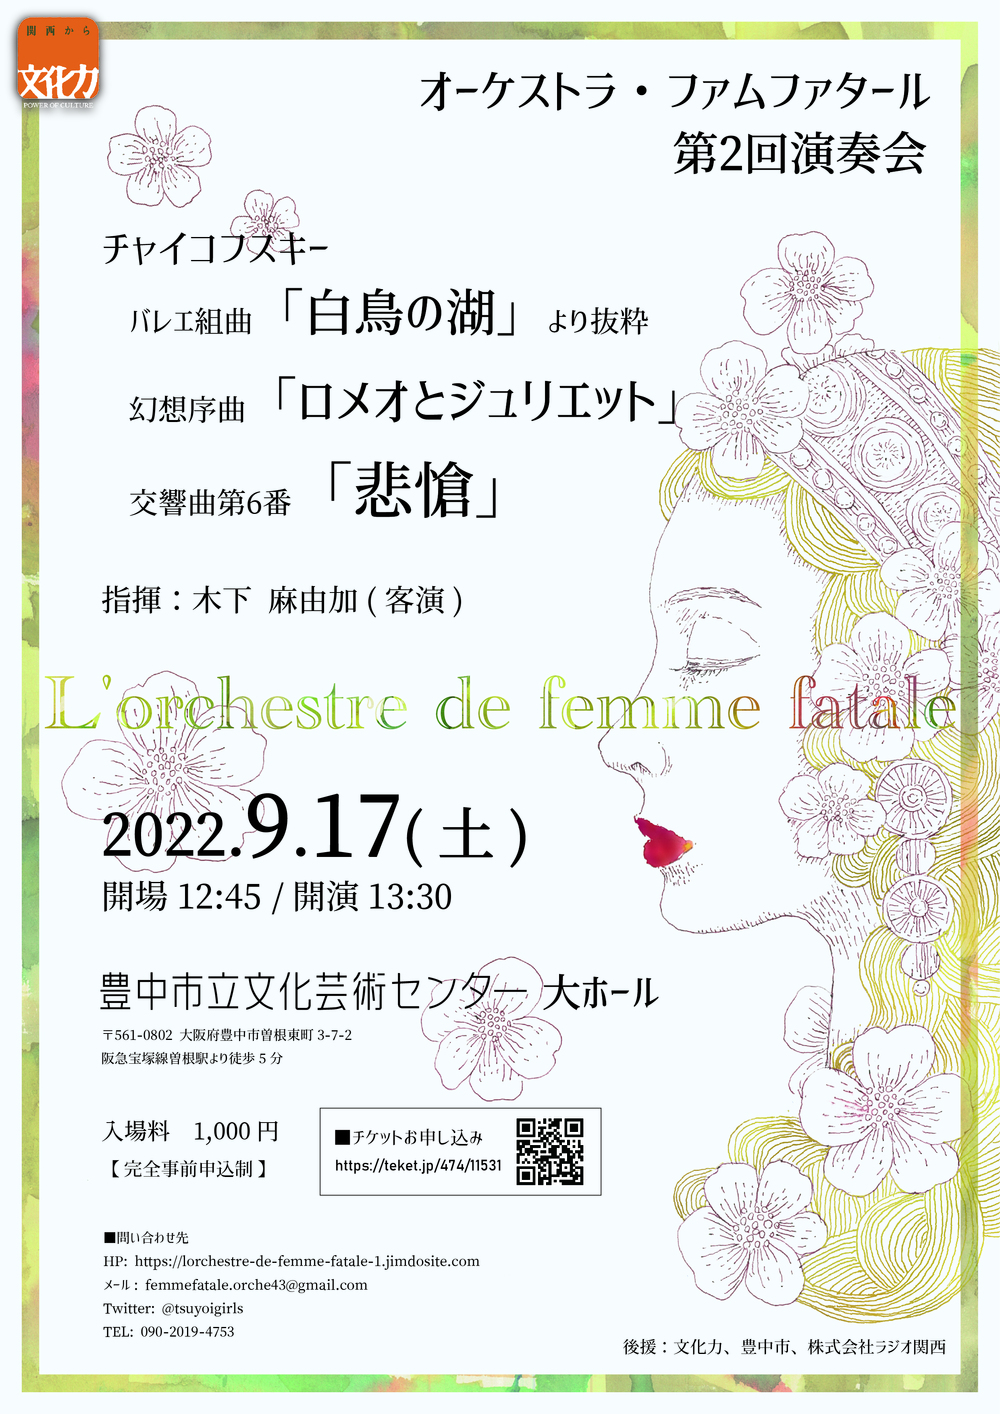 L Orchestre De Femme Fatale 第2回演奏会 L Orchestre De Femme Fatale 豊中市立文化芸術センター 大ホール